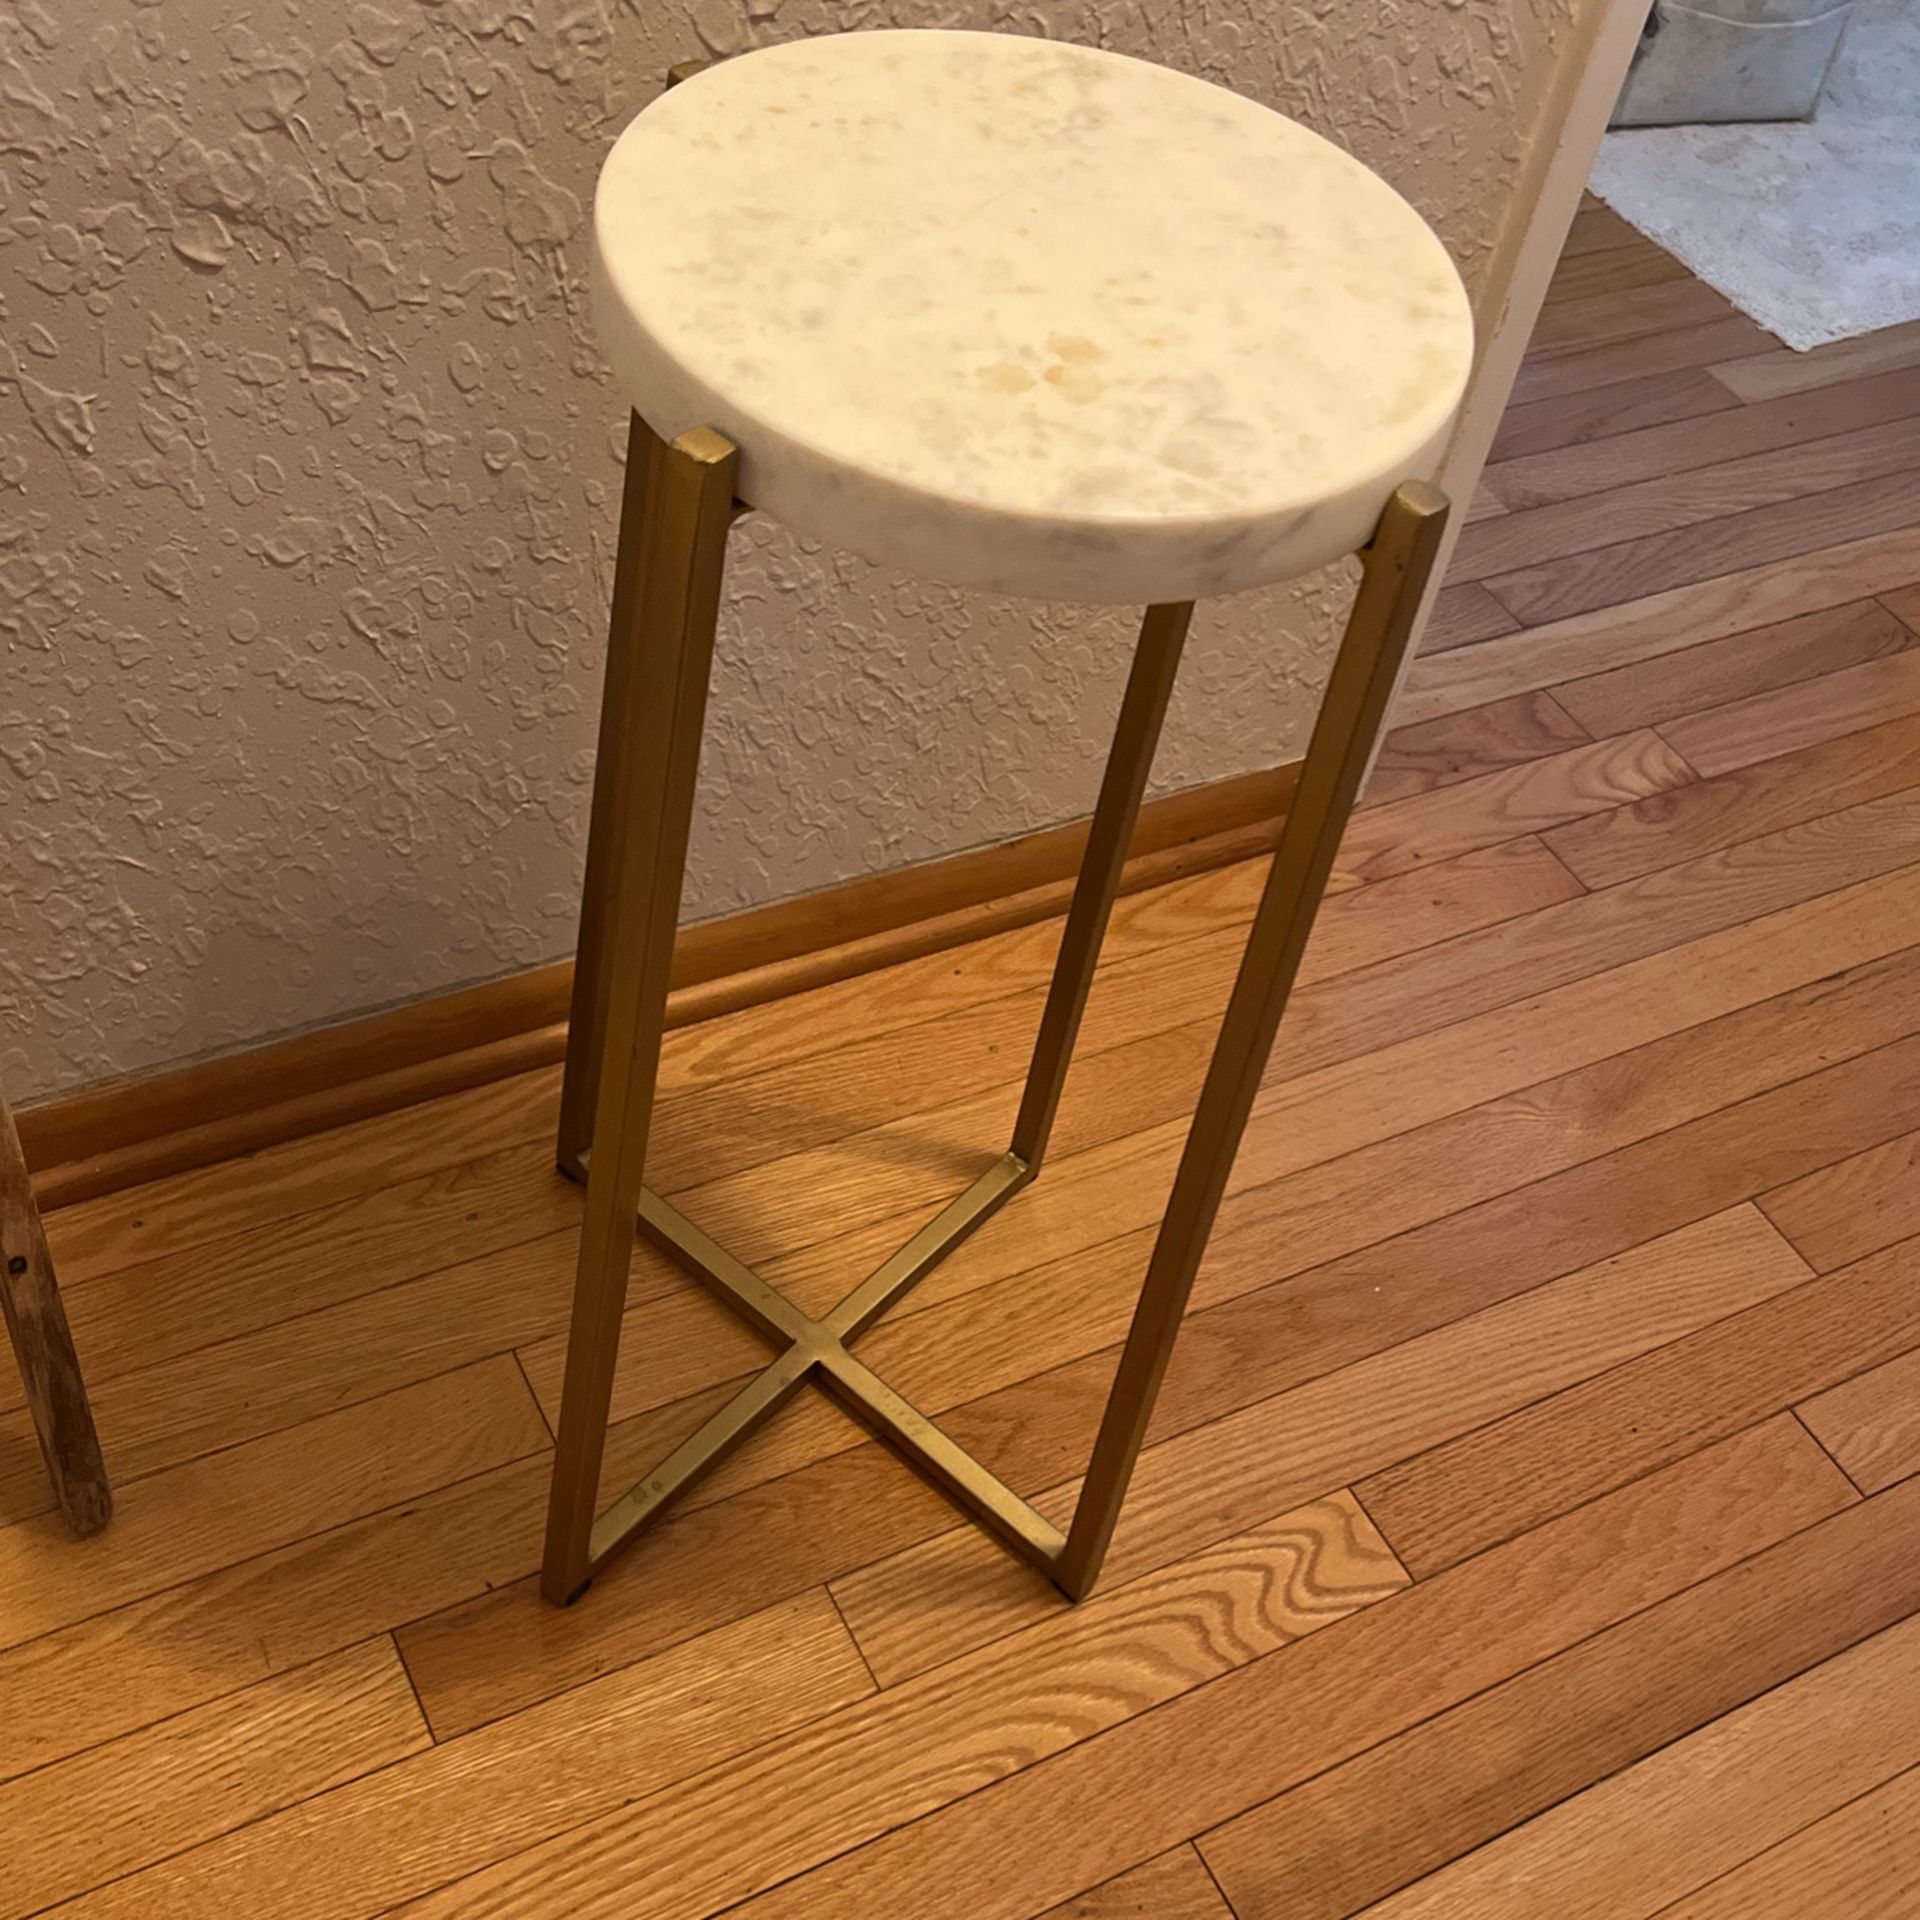 Small Decorative Table 